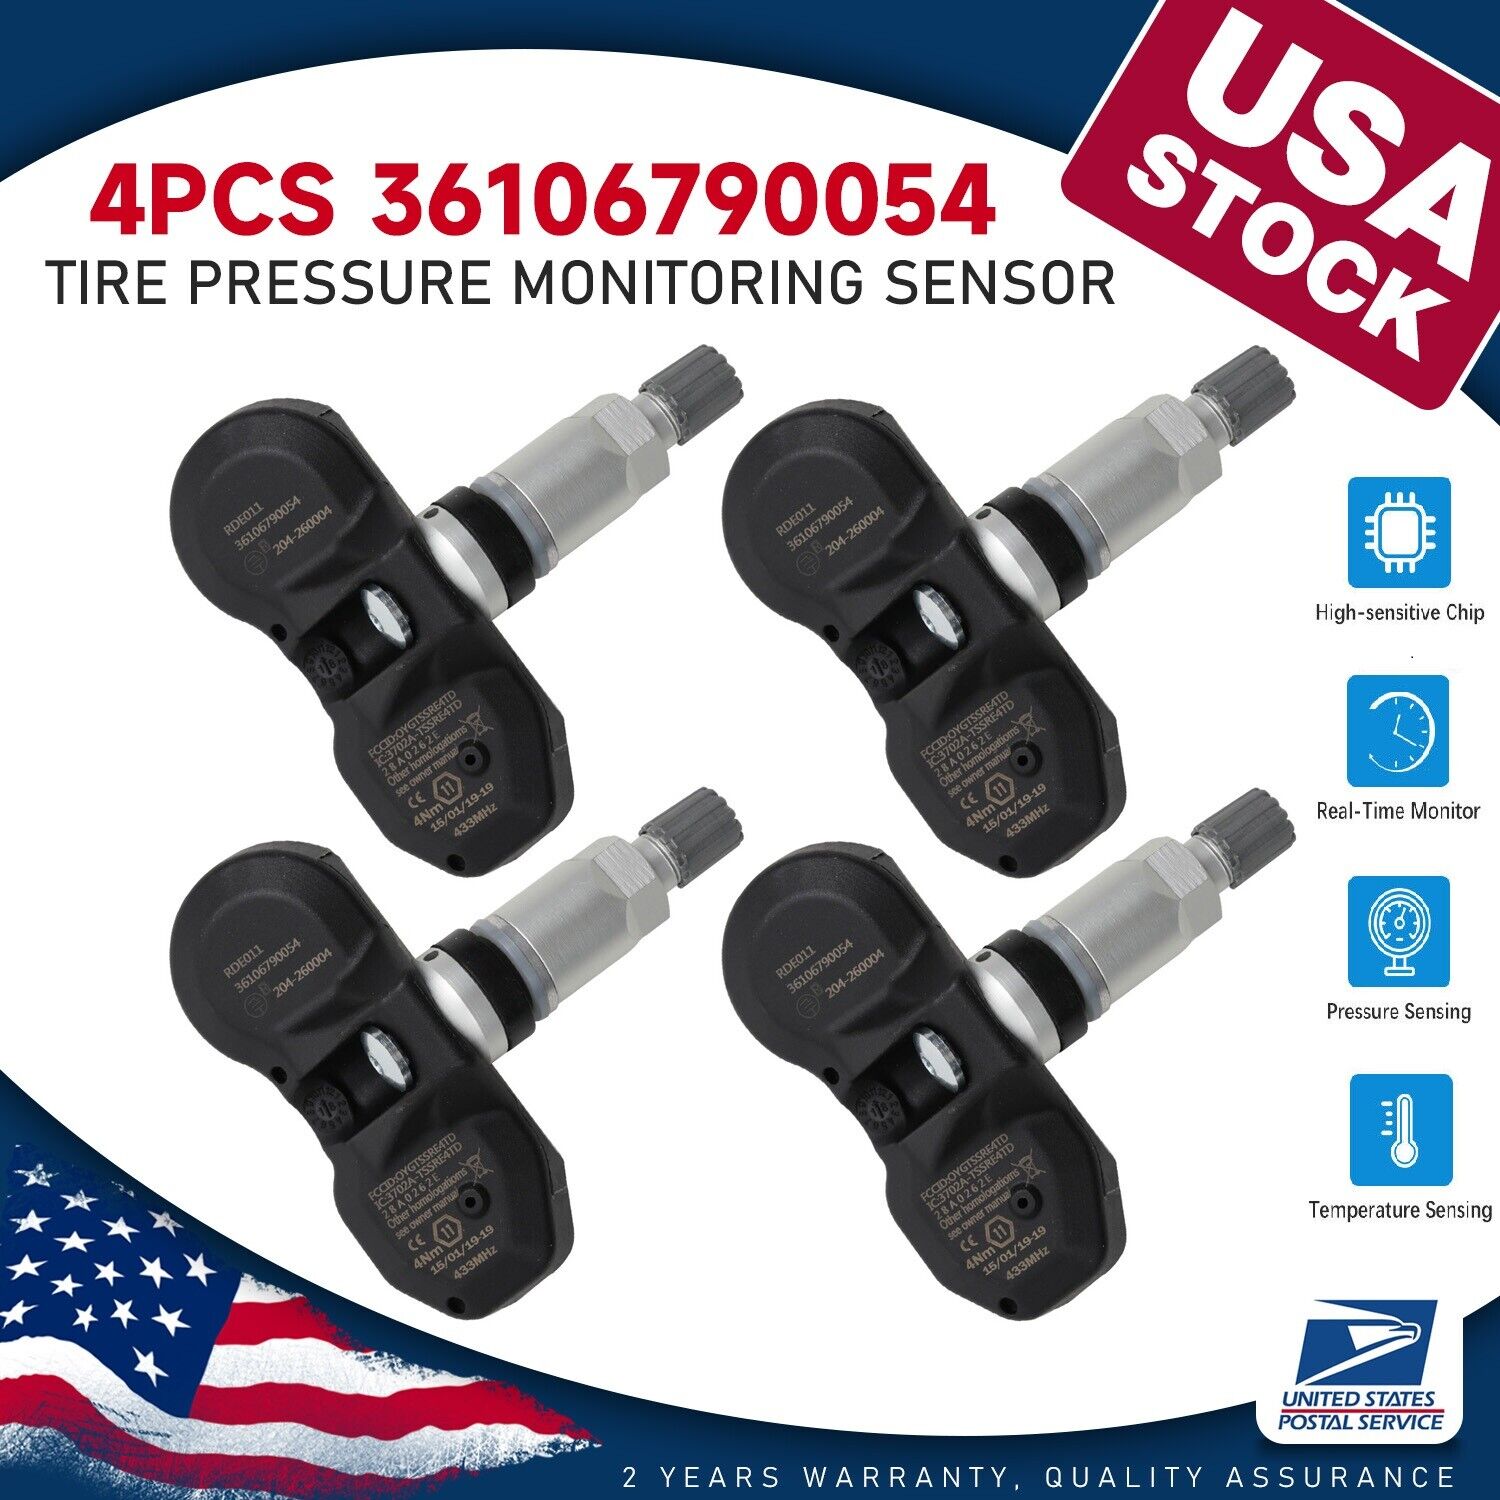 4pcs 36106790054 Tire Pressure Sensor TPMS For BMW 328i X3 X5 Z4 MINI 433MHz